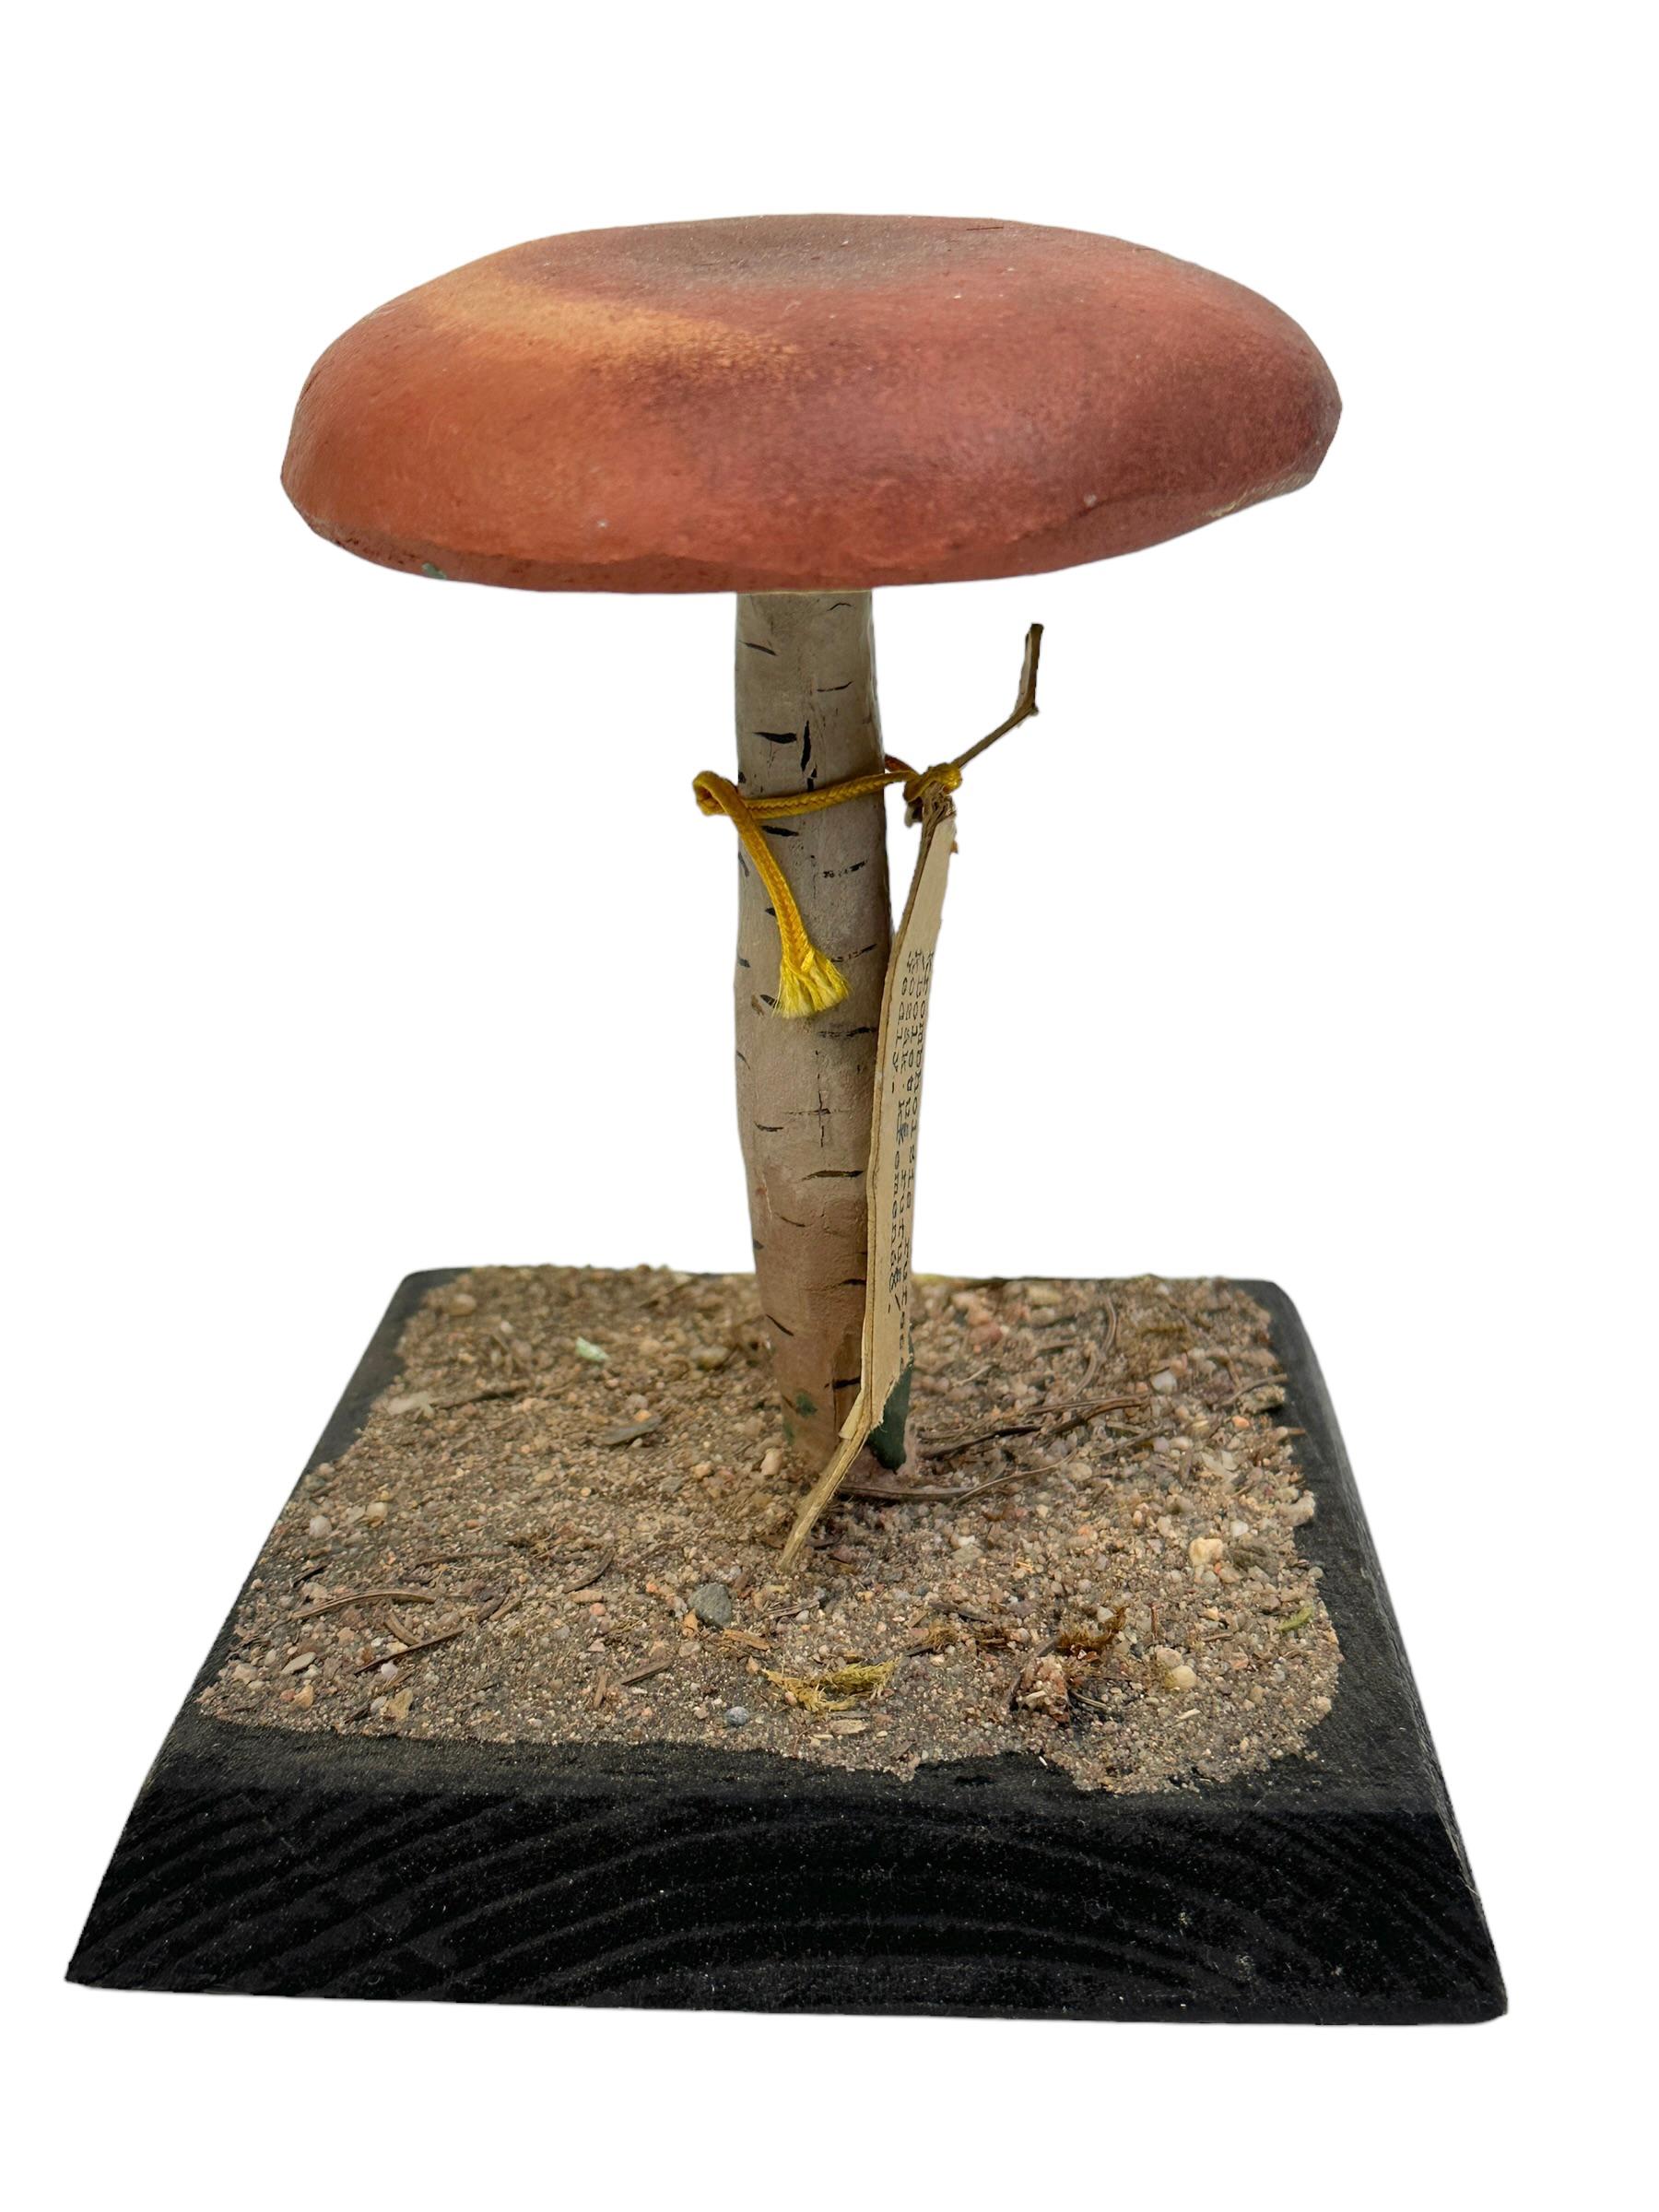 mushroom specimen